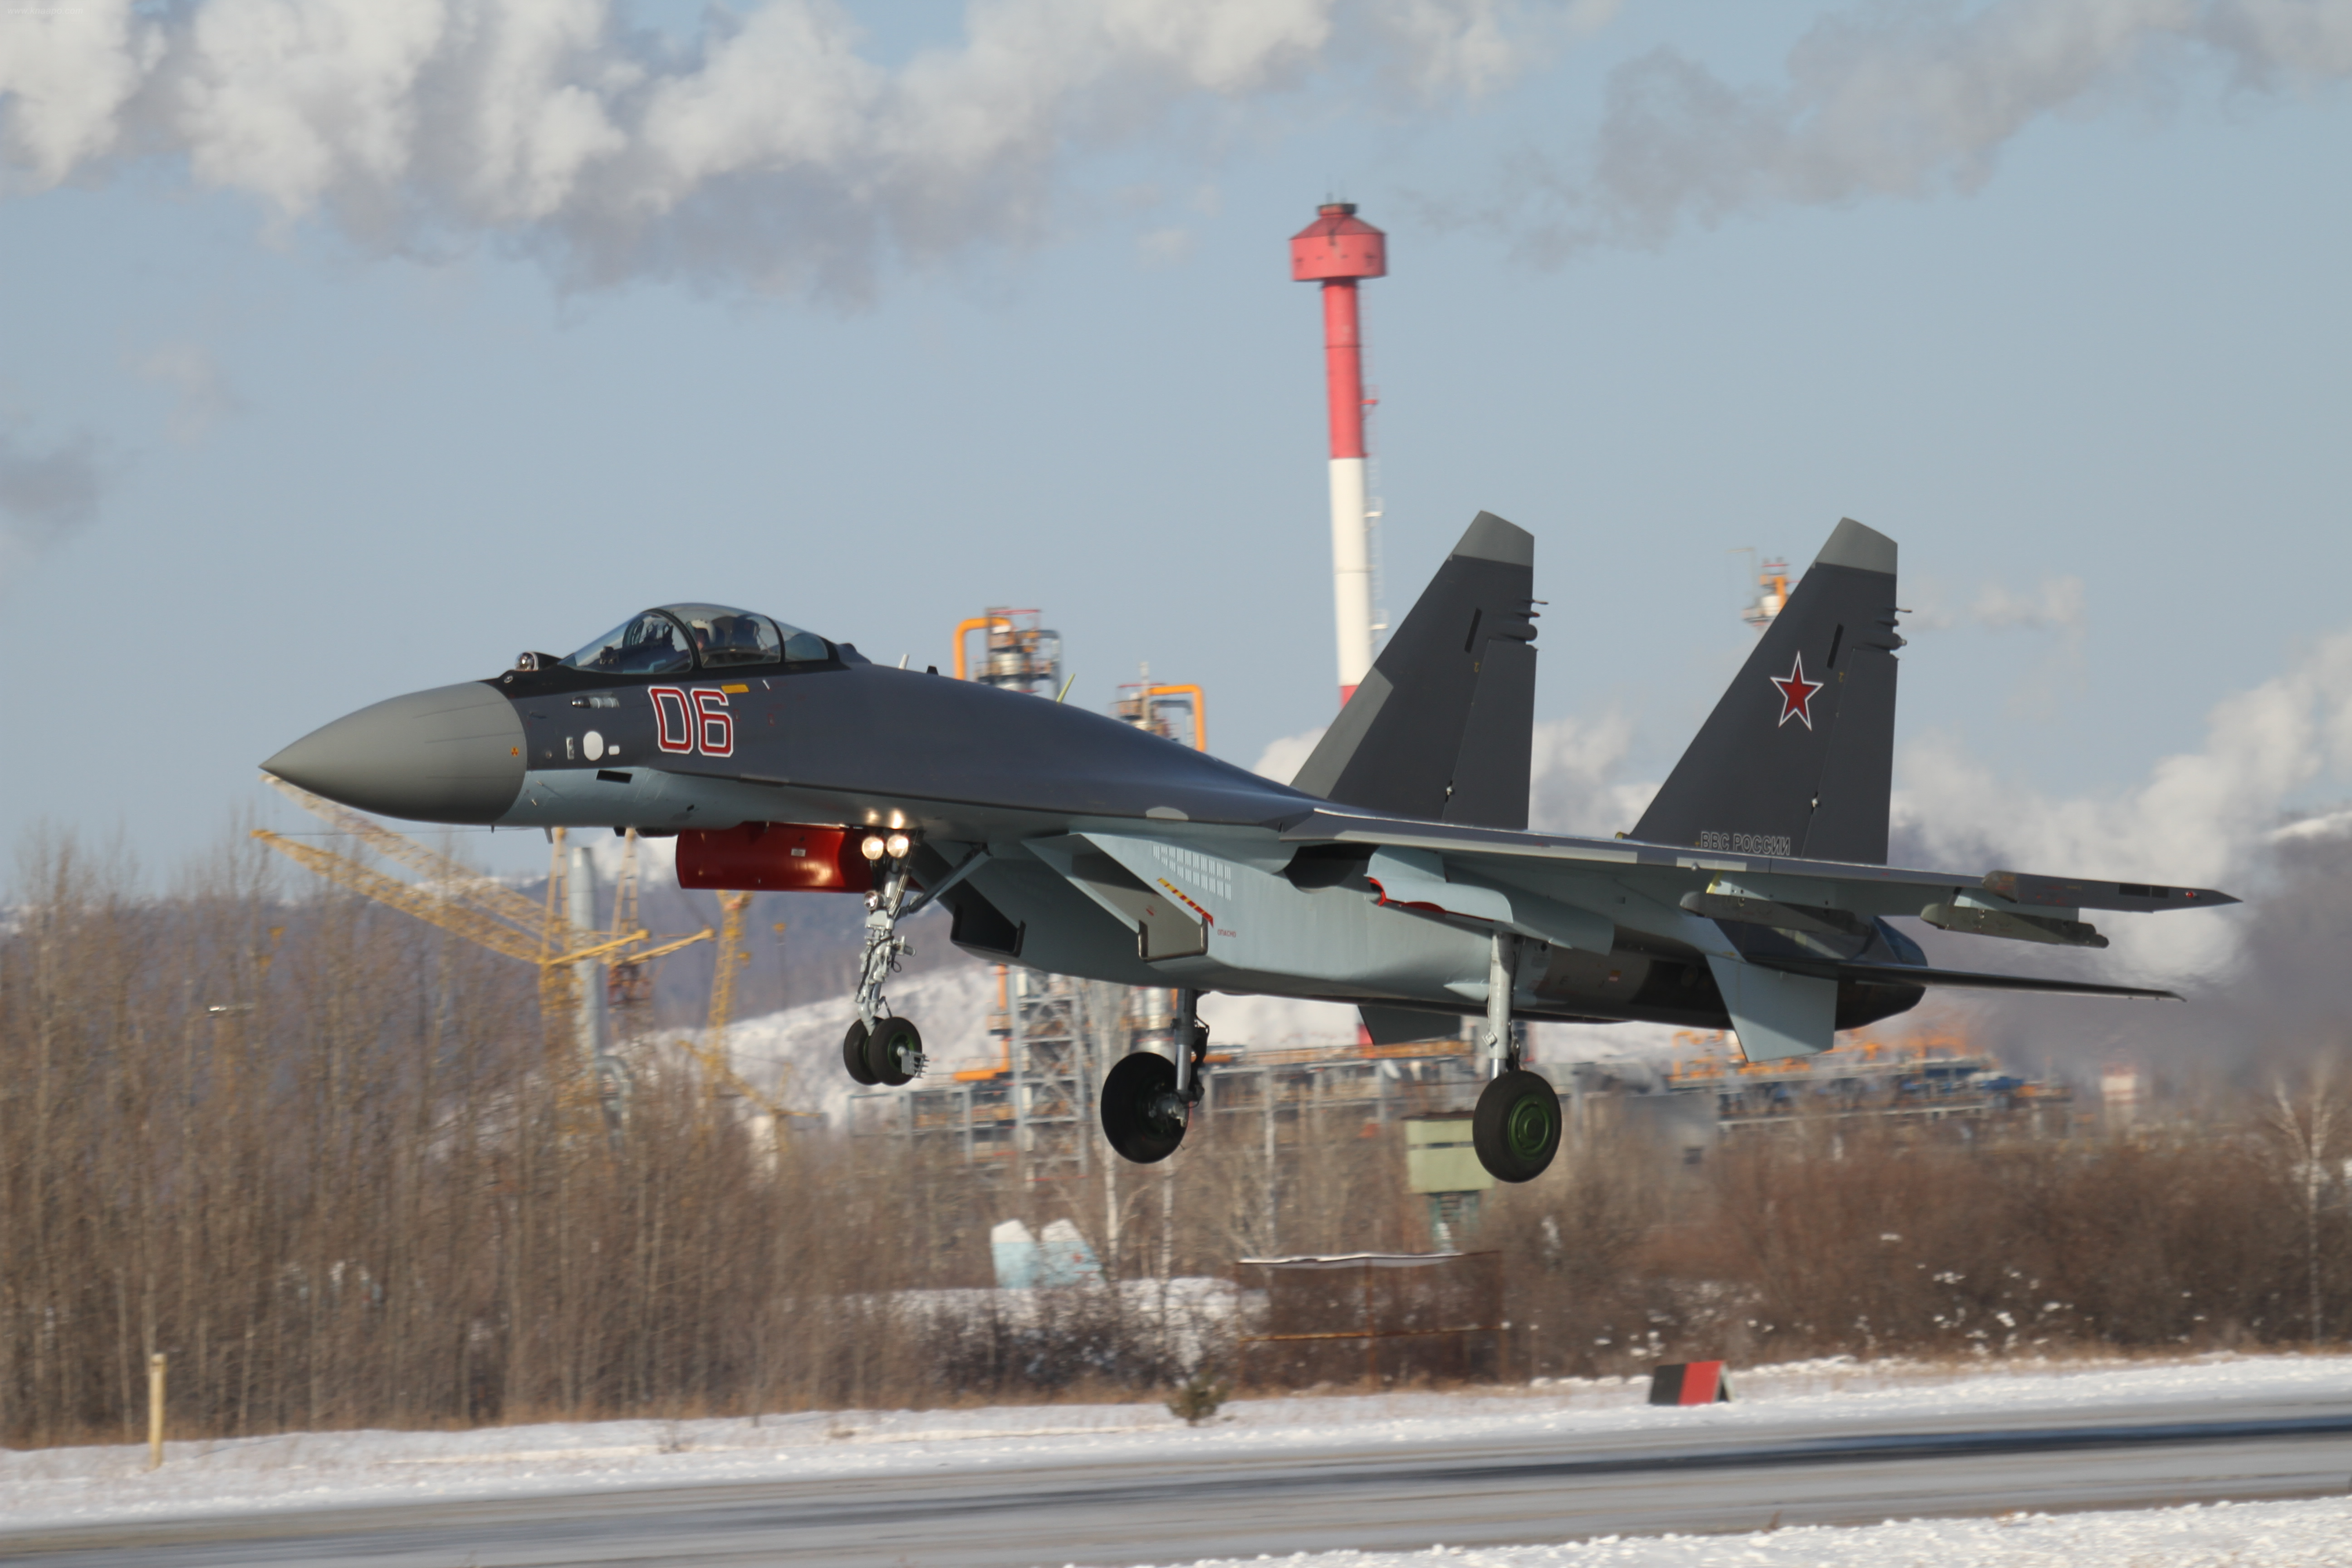 Hệ thống kiểm soát radar Irbis được tích hợp trên máy bay Su-35S có thể phát hiện mục tiêu trên không ở khoảng cách kỷ lục, lên đến 400km, và cùng lúc có thể theo dõi tới 30 mục tiêu cũng như đánh chặn 8 mục tiêu.